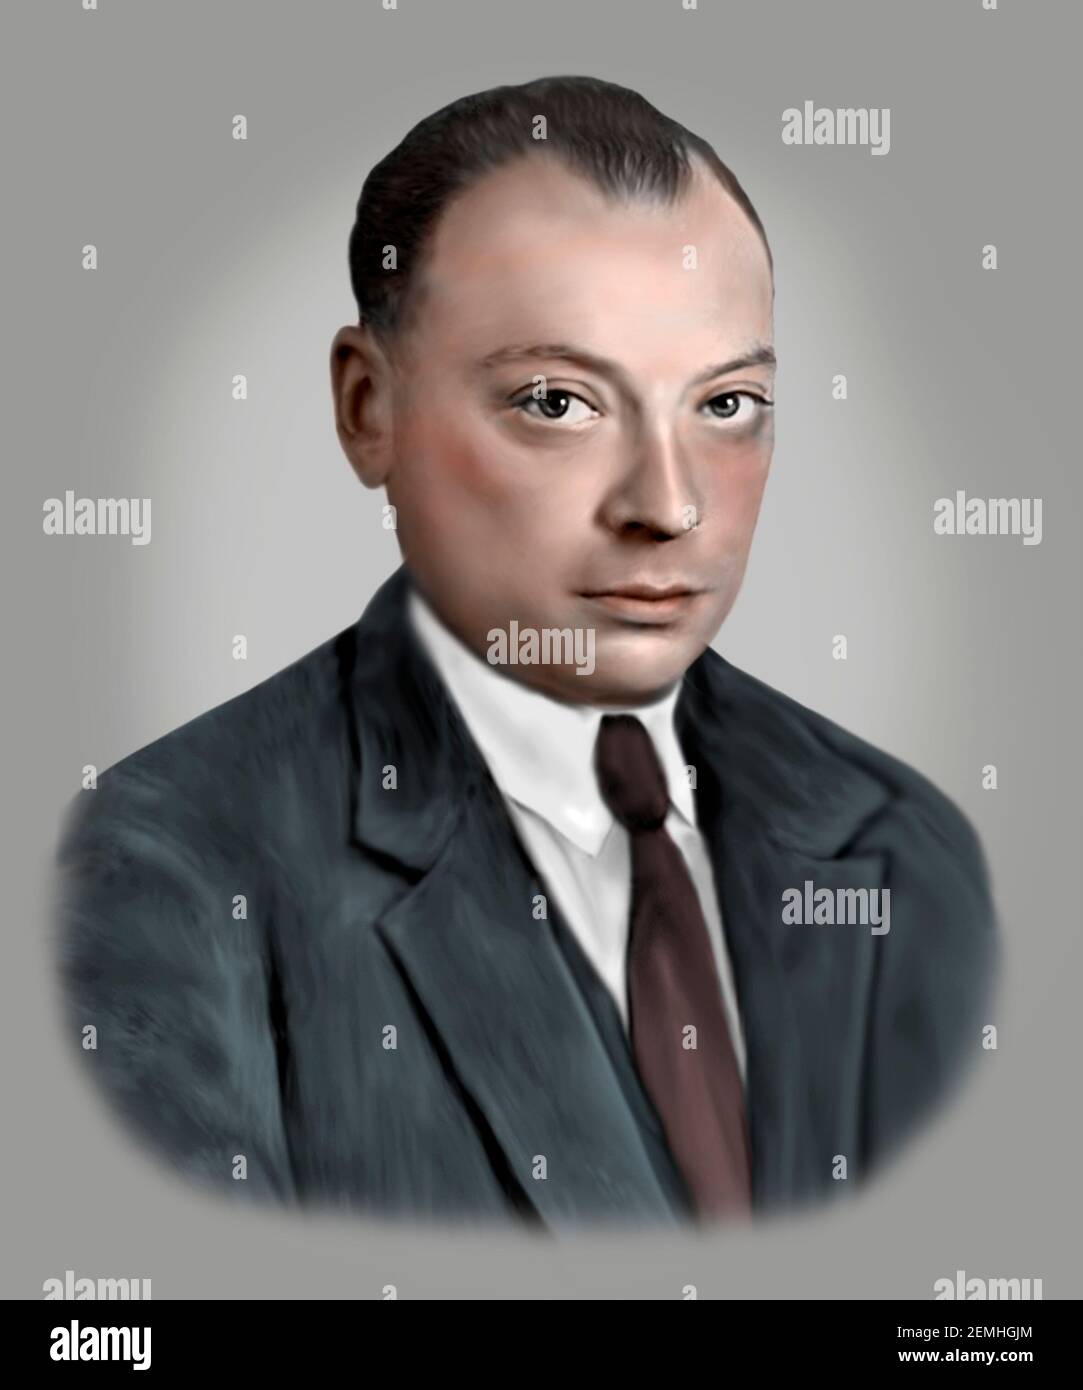 Wolfgang Ernst Pauli 1900-1958 fisico teorico austriaco (successivamente svizzero americano) Foto Stock